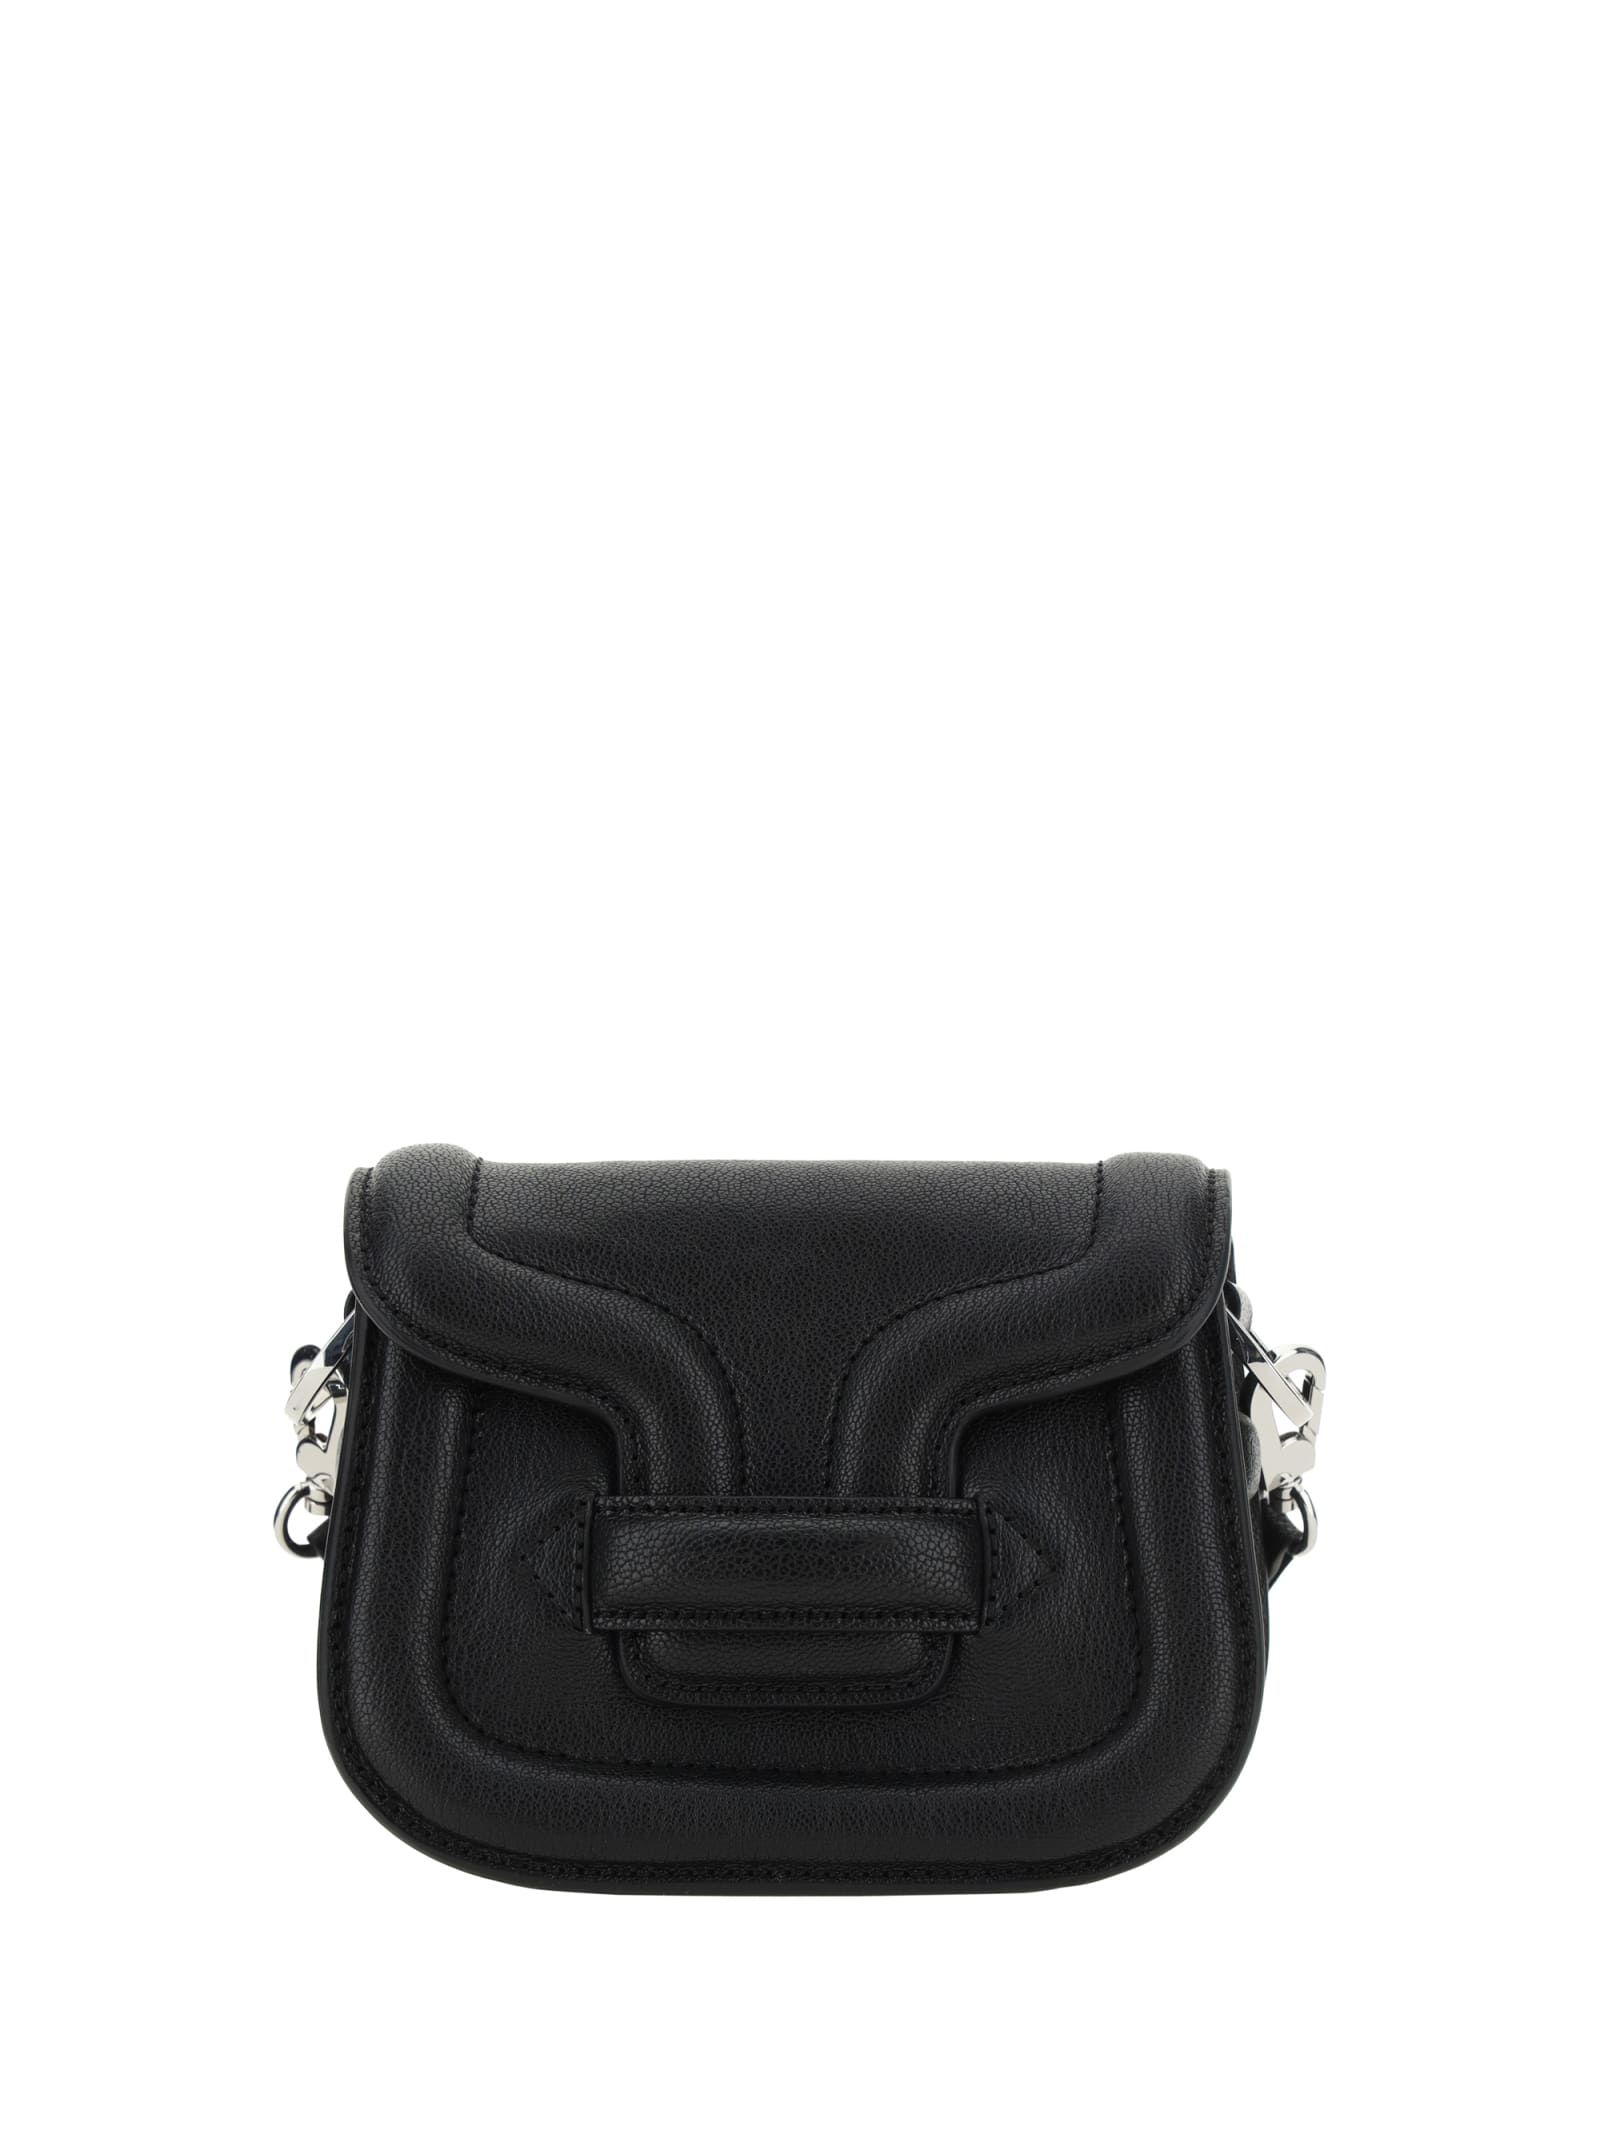 Shop Pierre Hardy Alphaville Handbag In Black/silver